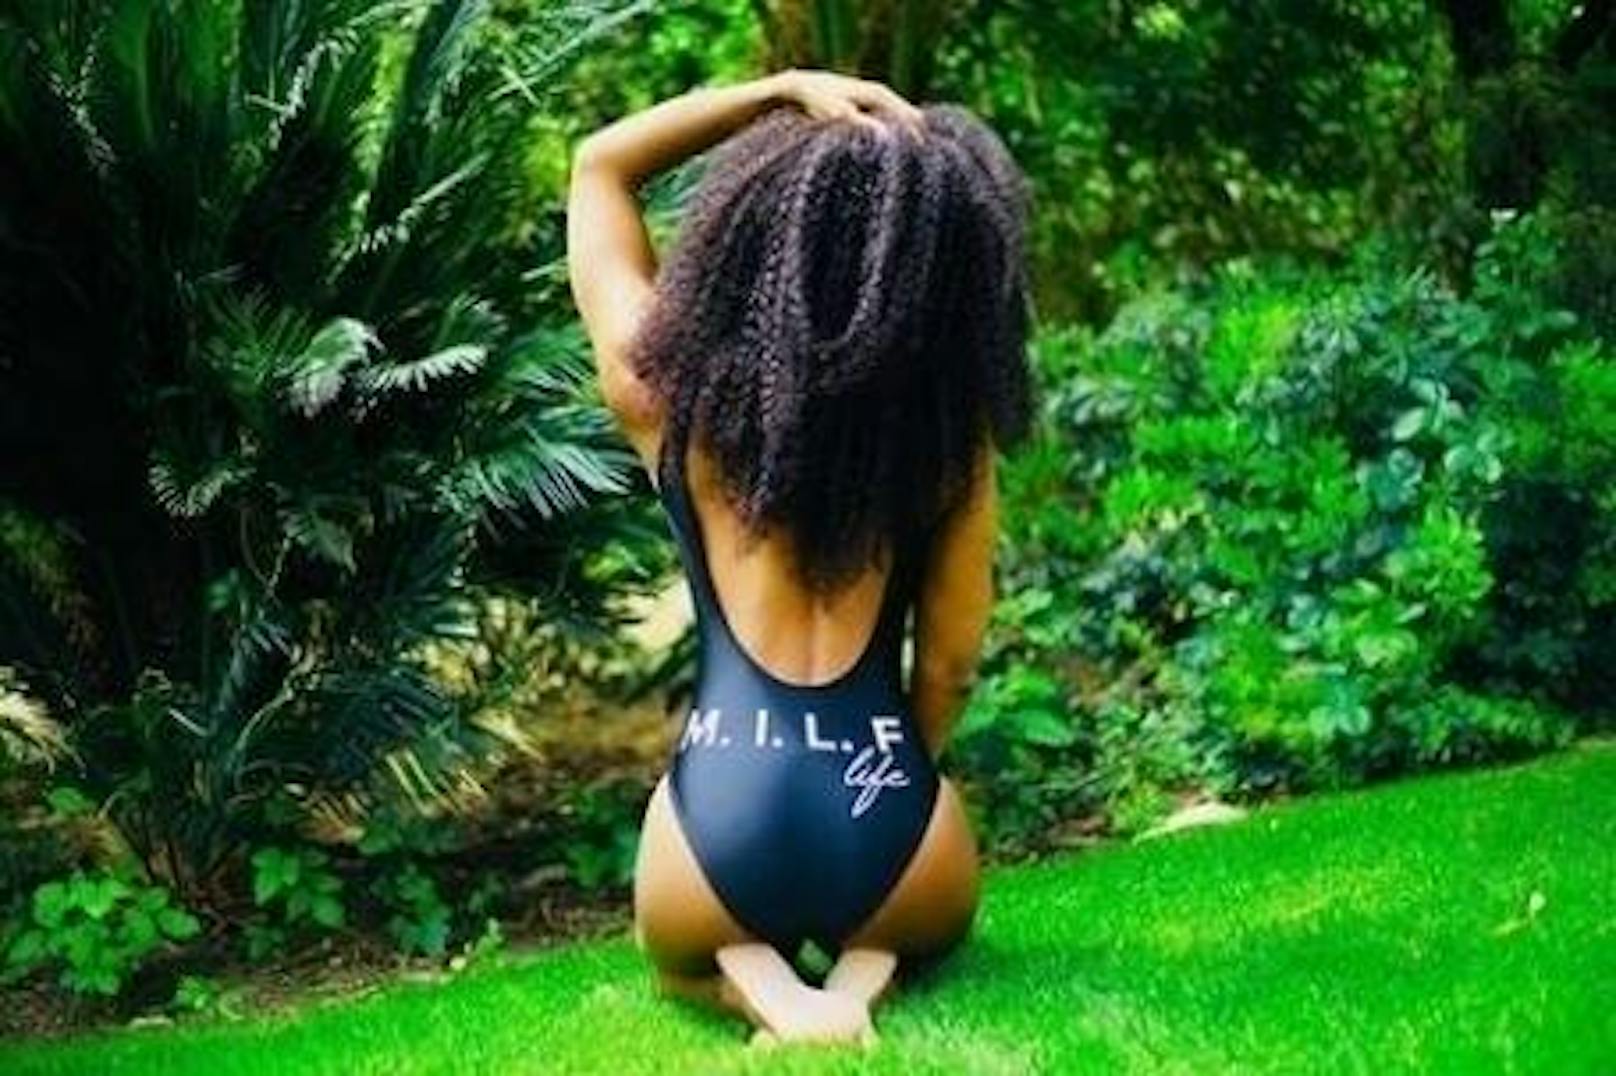 26.04.2018: Popstar Kelly Rowland stellt mit der Aufschrift "M.I.L.F" auf ihrem Badeanzug unmissverständlich klar: Auch Mamas wollen als sexy wahrgenommen werden.